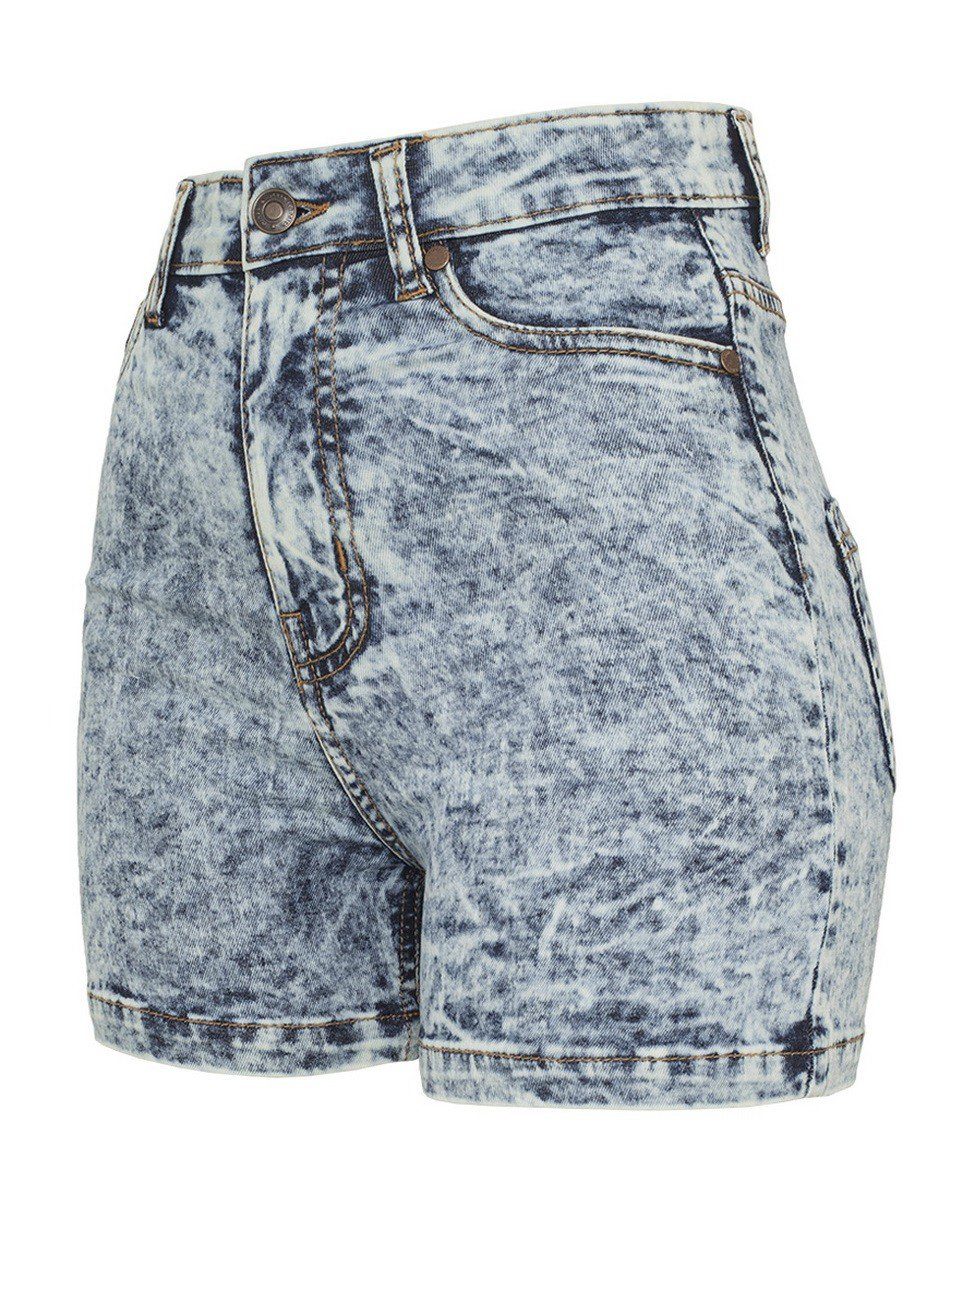 High Waist Jeans Shorts online kaufen | OTTO